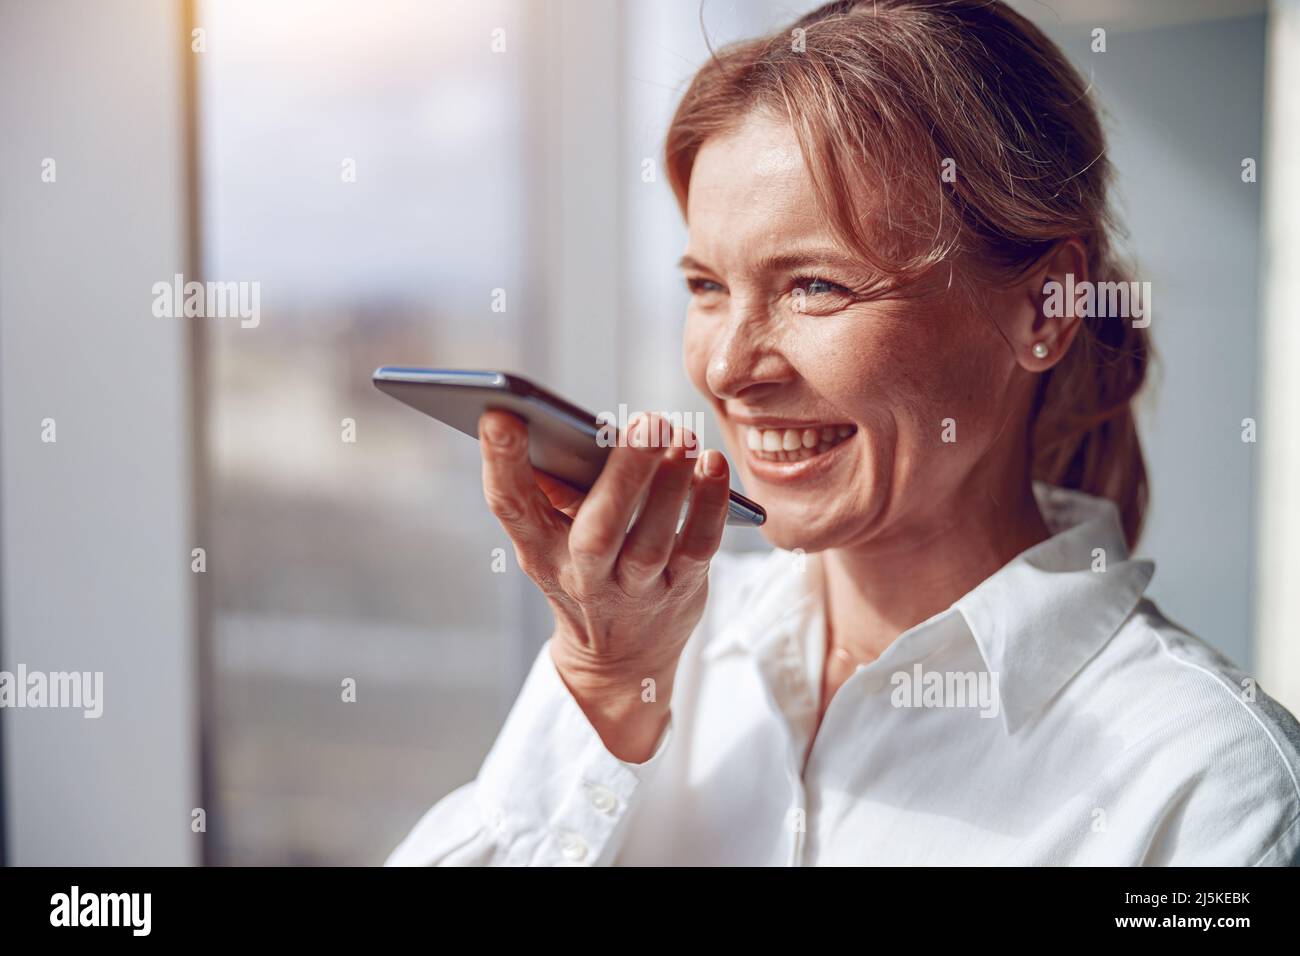 une femme mûre et souriante utilise un smartphone pour enregistrer un massage vocal à son partenaire d'affaires Banque D'Images